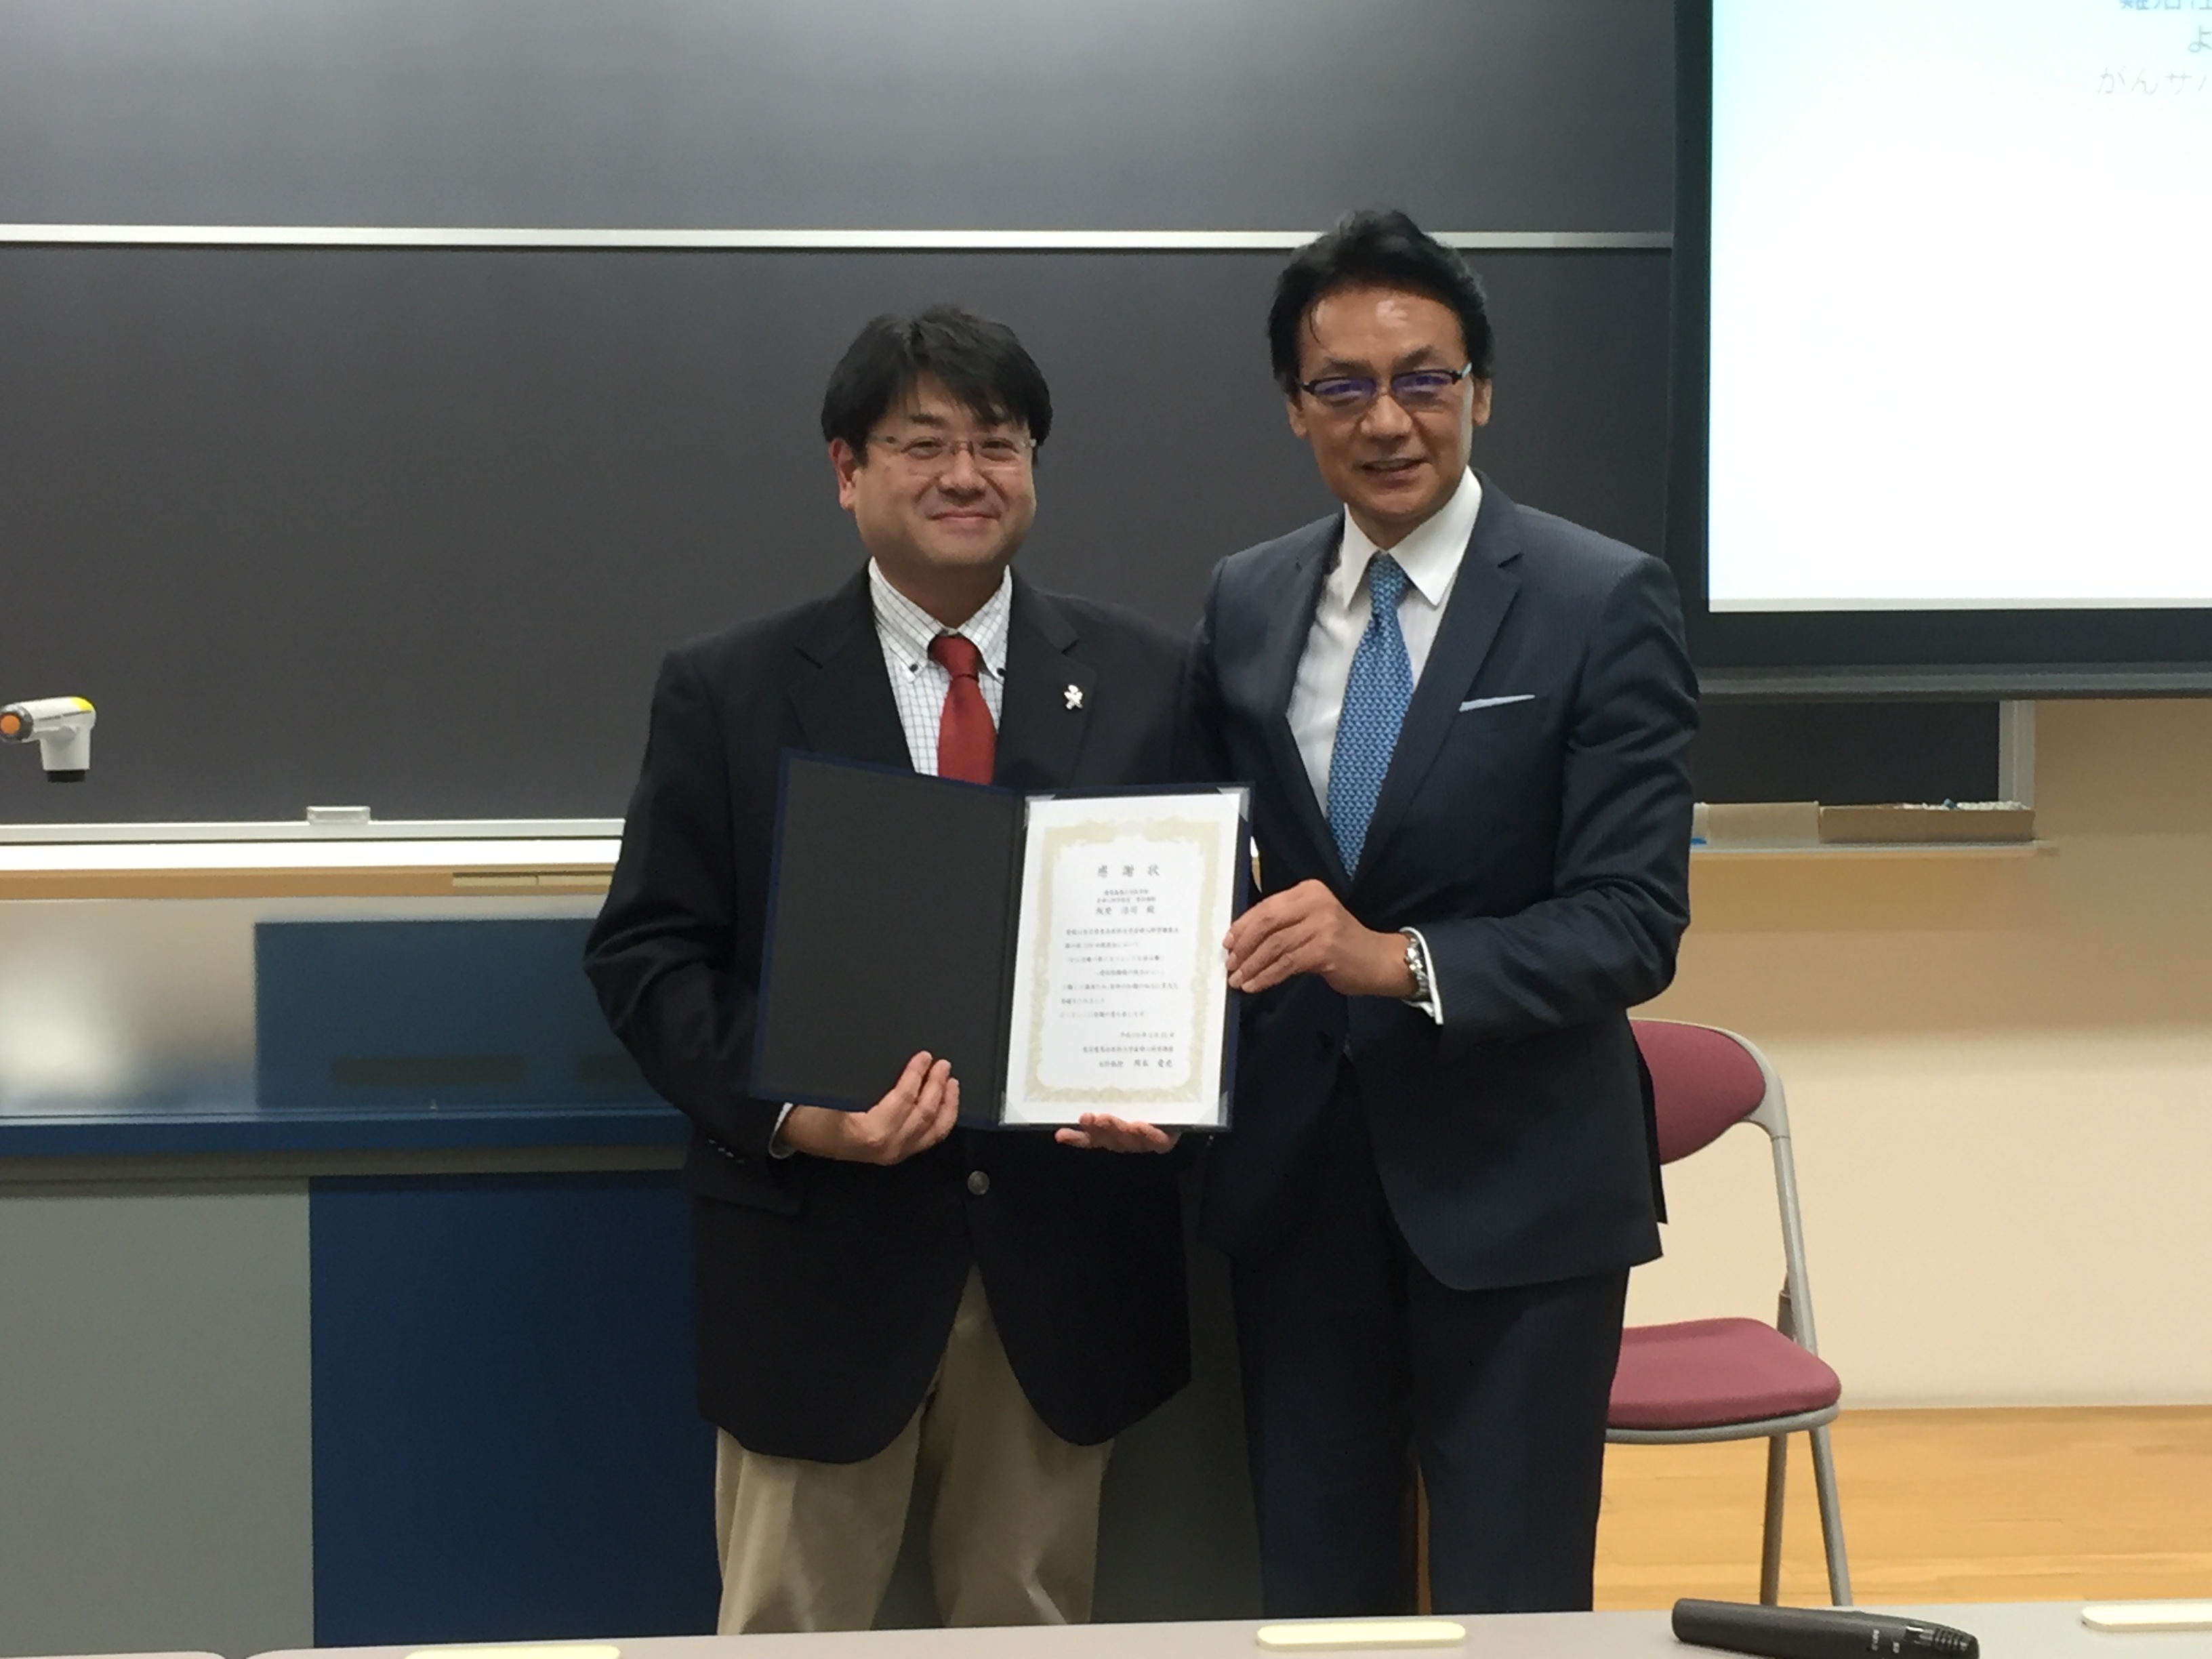 第108回集談会で慶應義塾大学 阪埜 浩司先生にご講演頂きました。